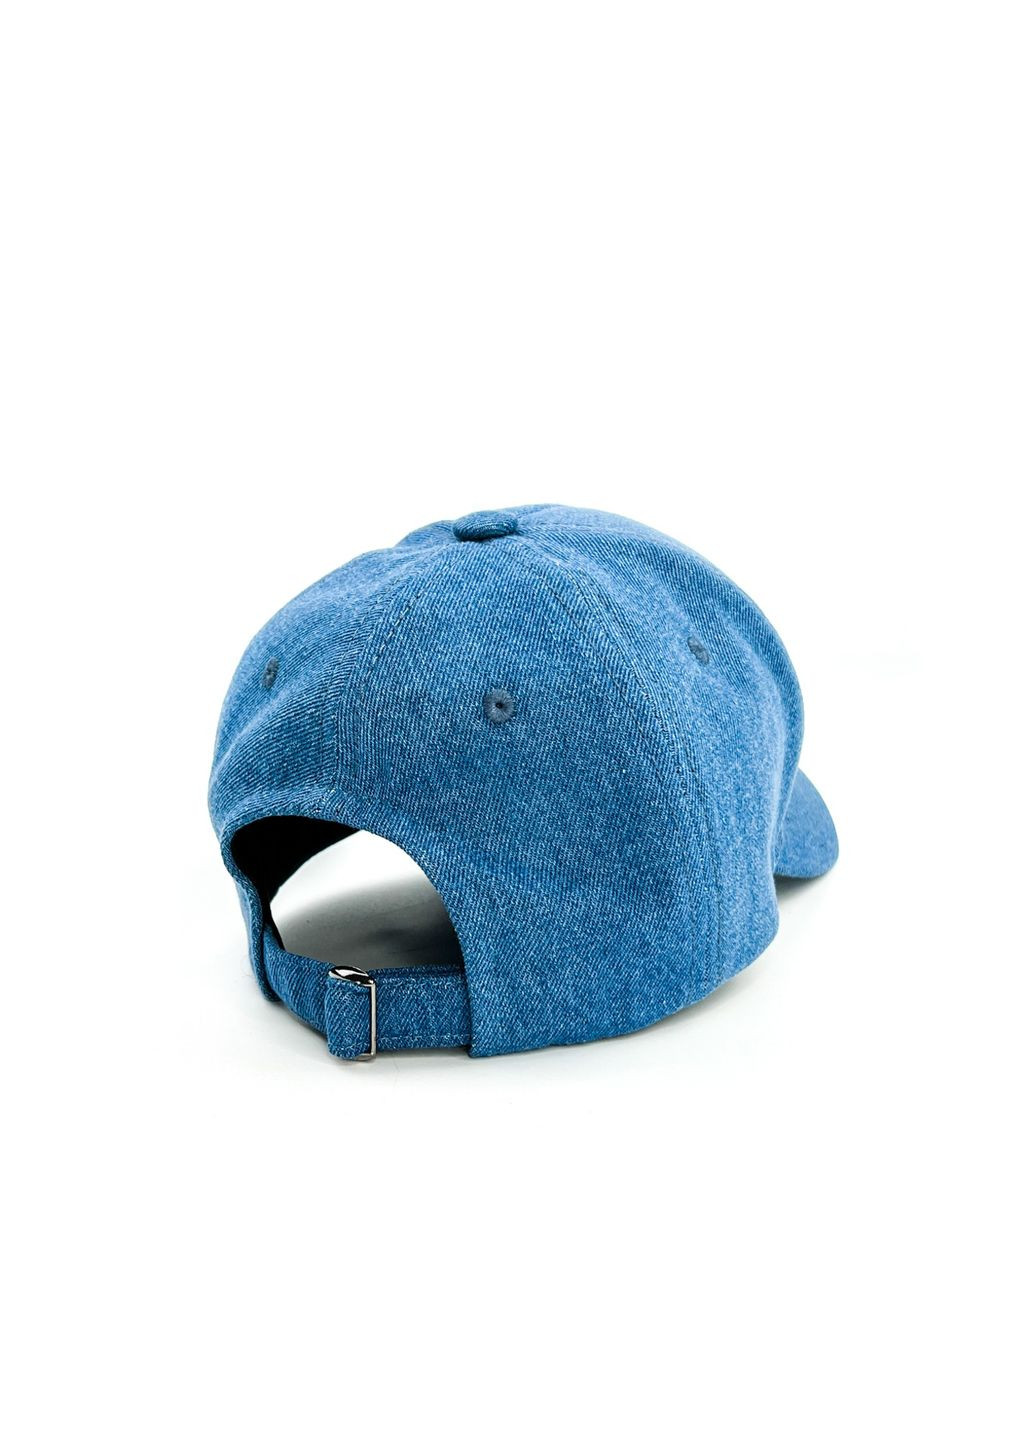 Бейсболка с регулятором мужская хлопок синяя ЛЕНОН 408-999 LuckyLOOK 408-999м (289358188)